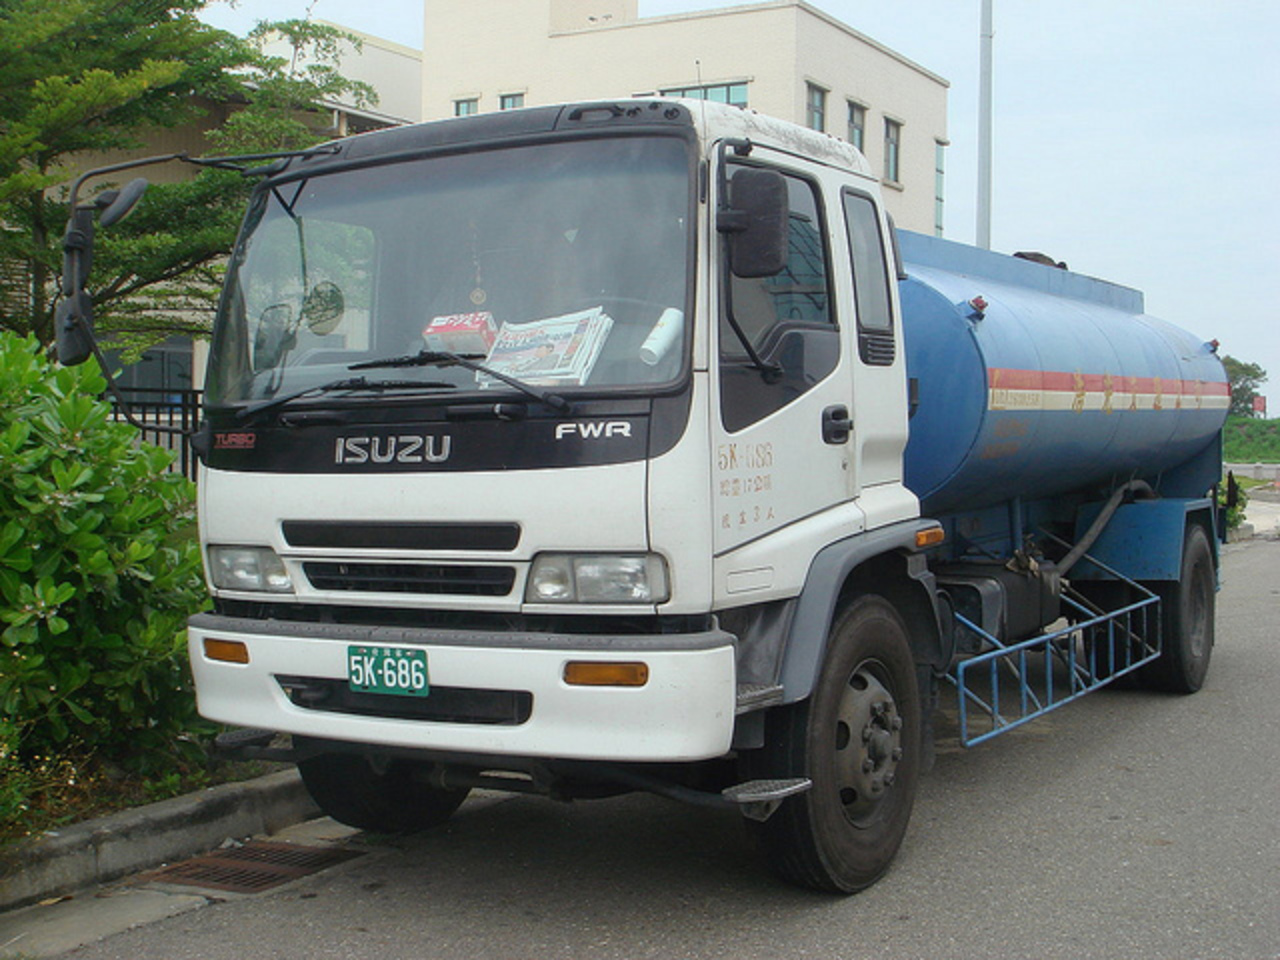 Flickr : Le Pool Mondial des Camions Japonais